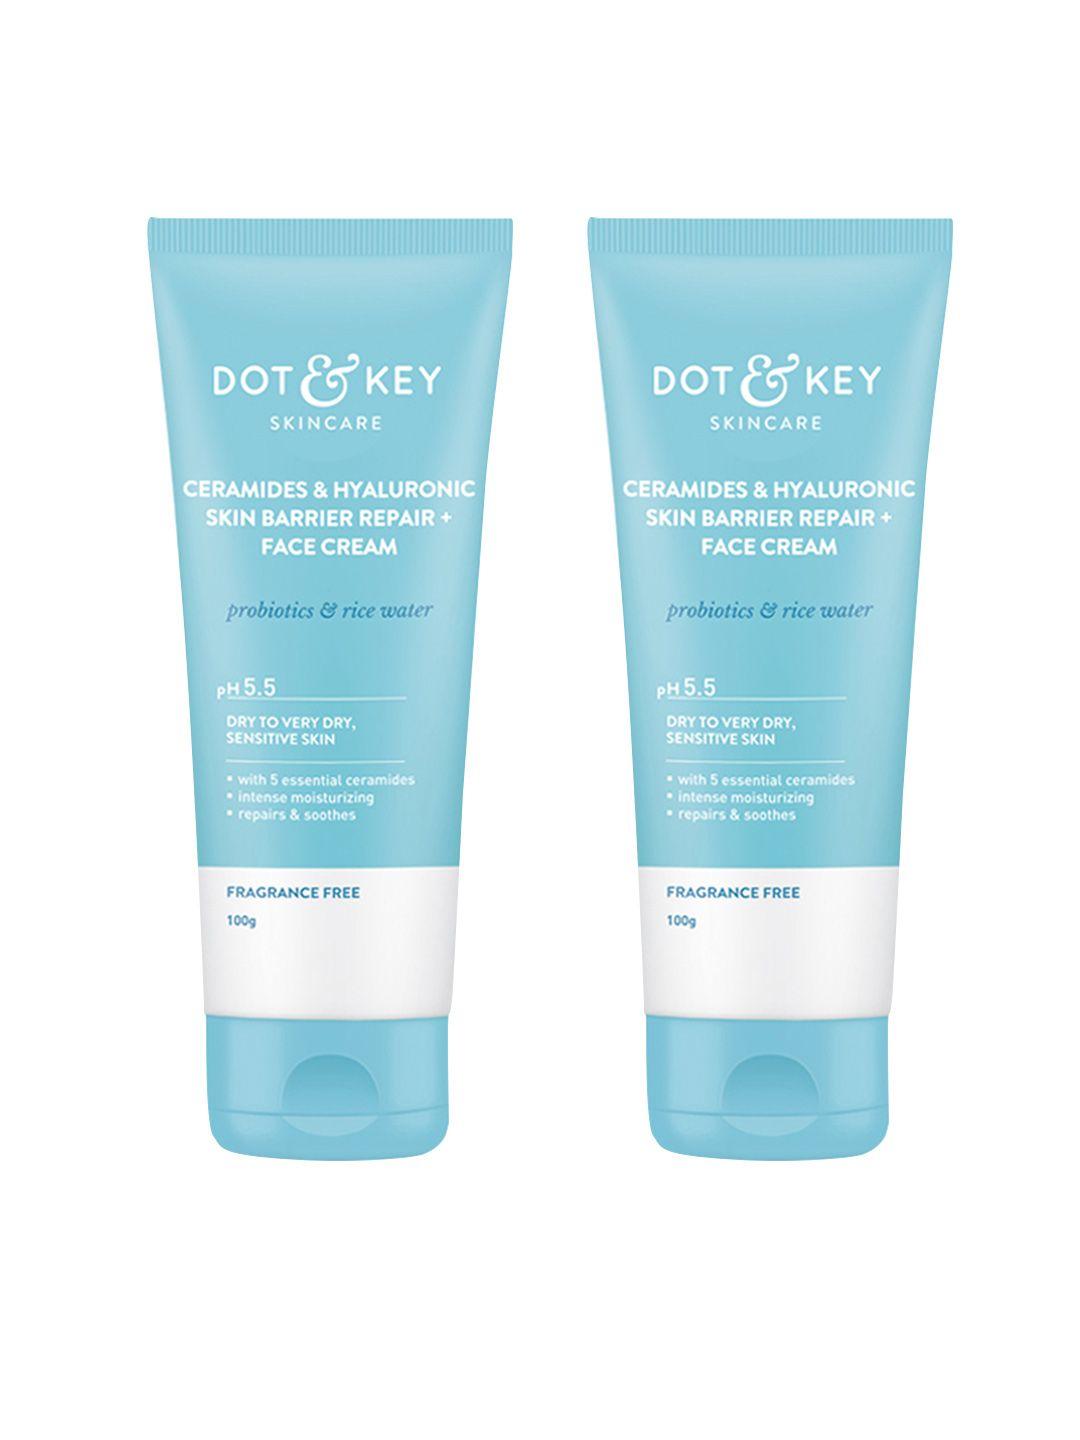 dot & key set of 2 ceramides+hyaluronic skin barrier repair face cream - 100g each